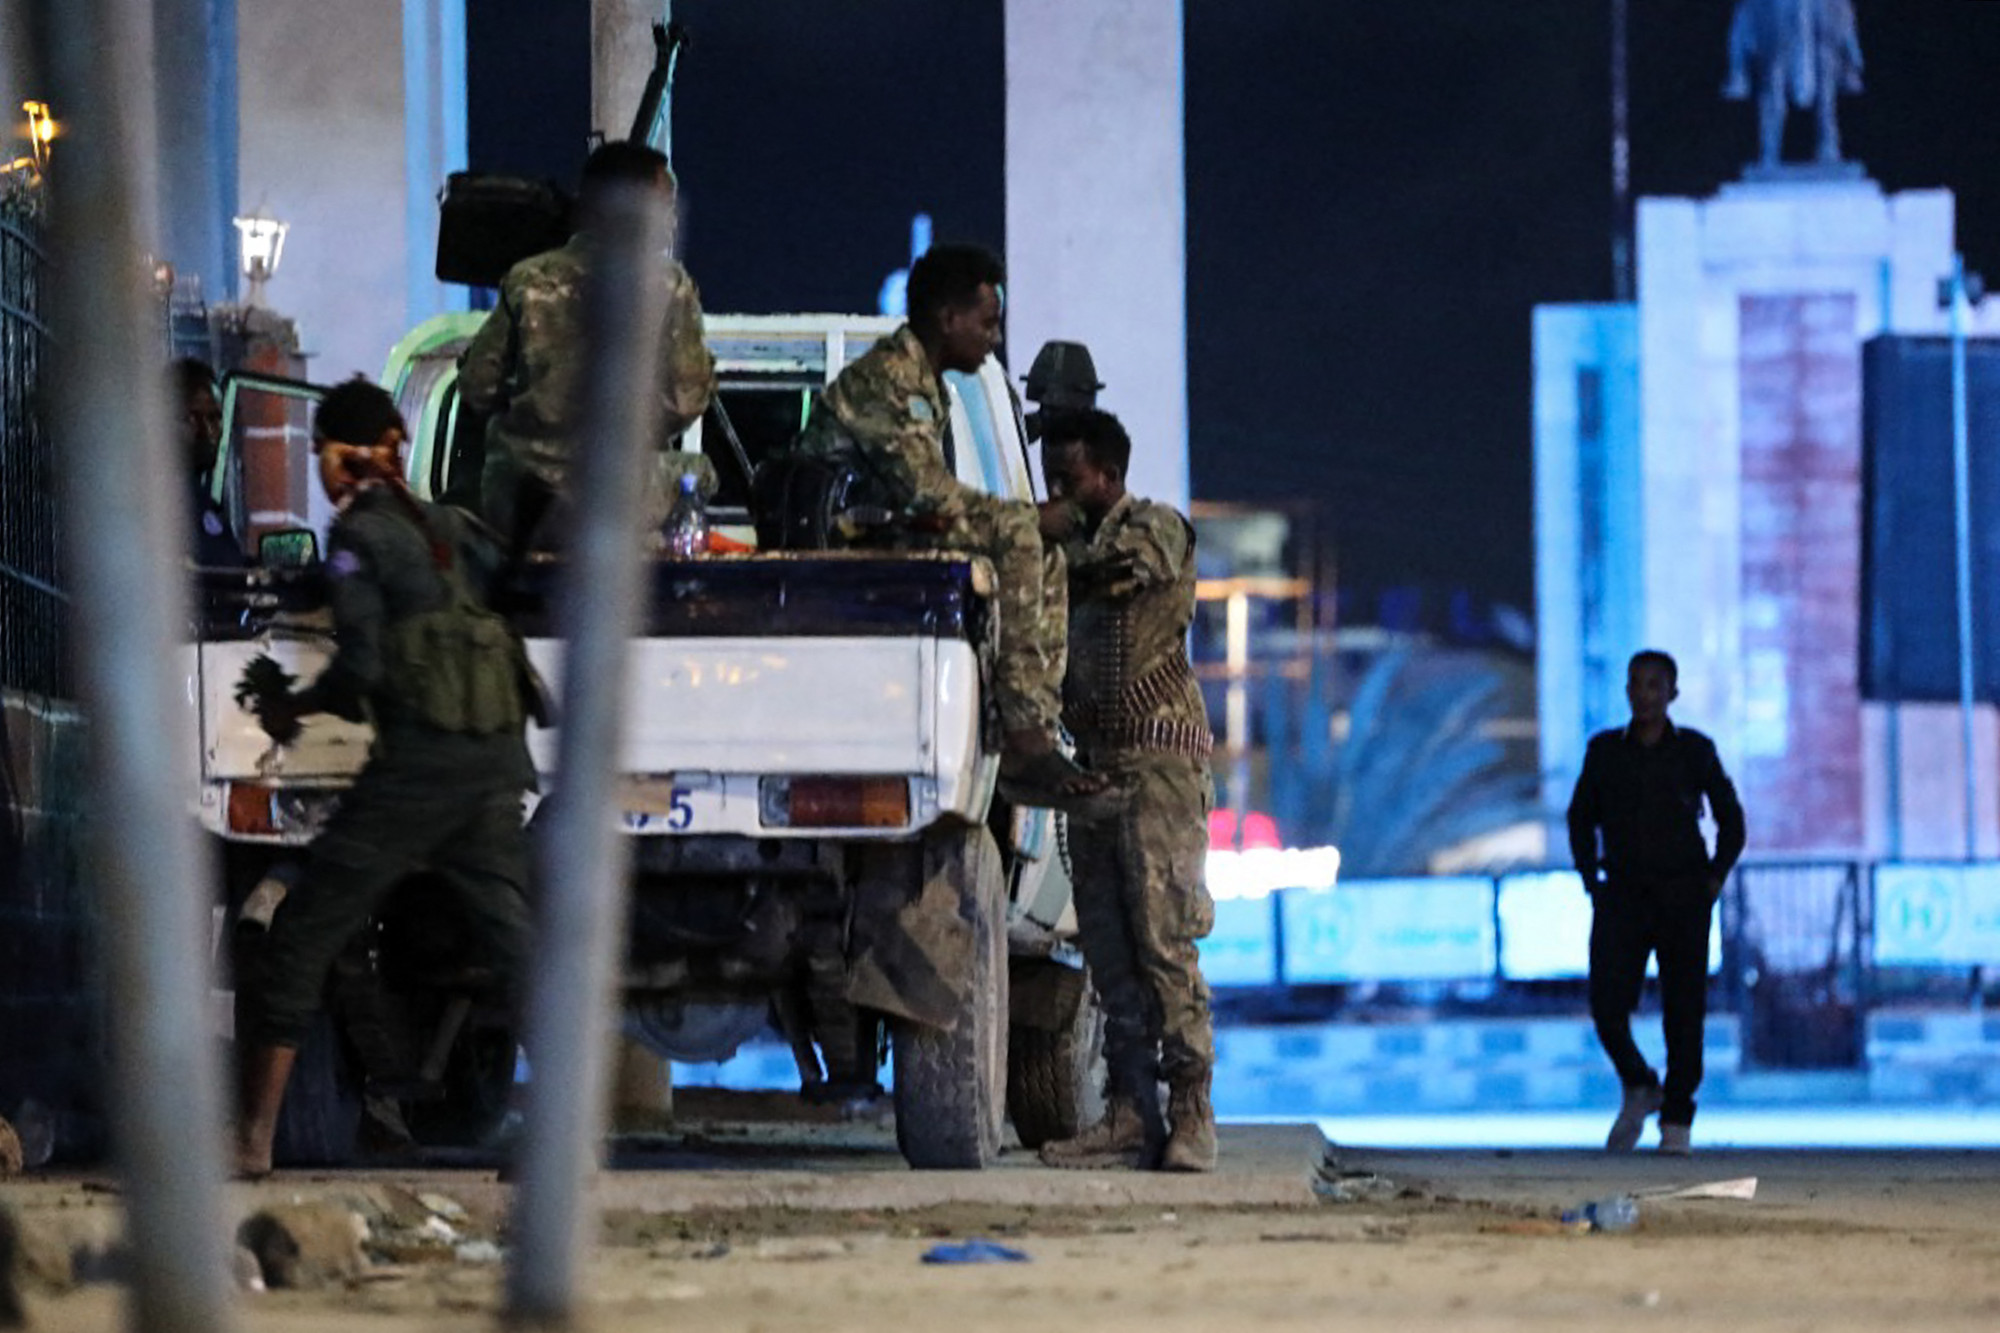 Legalább nyolc ember megöltek fegyveresek egy szomáliai hotelben